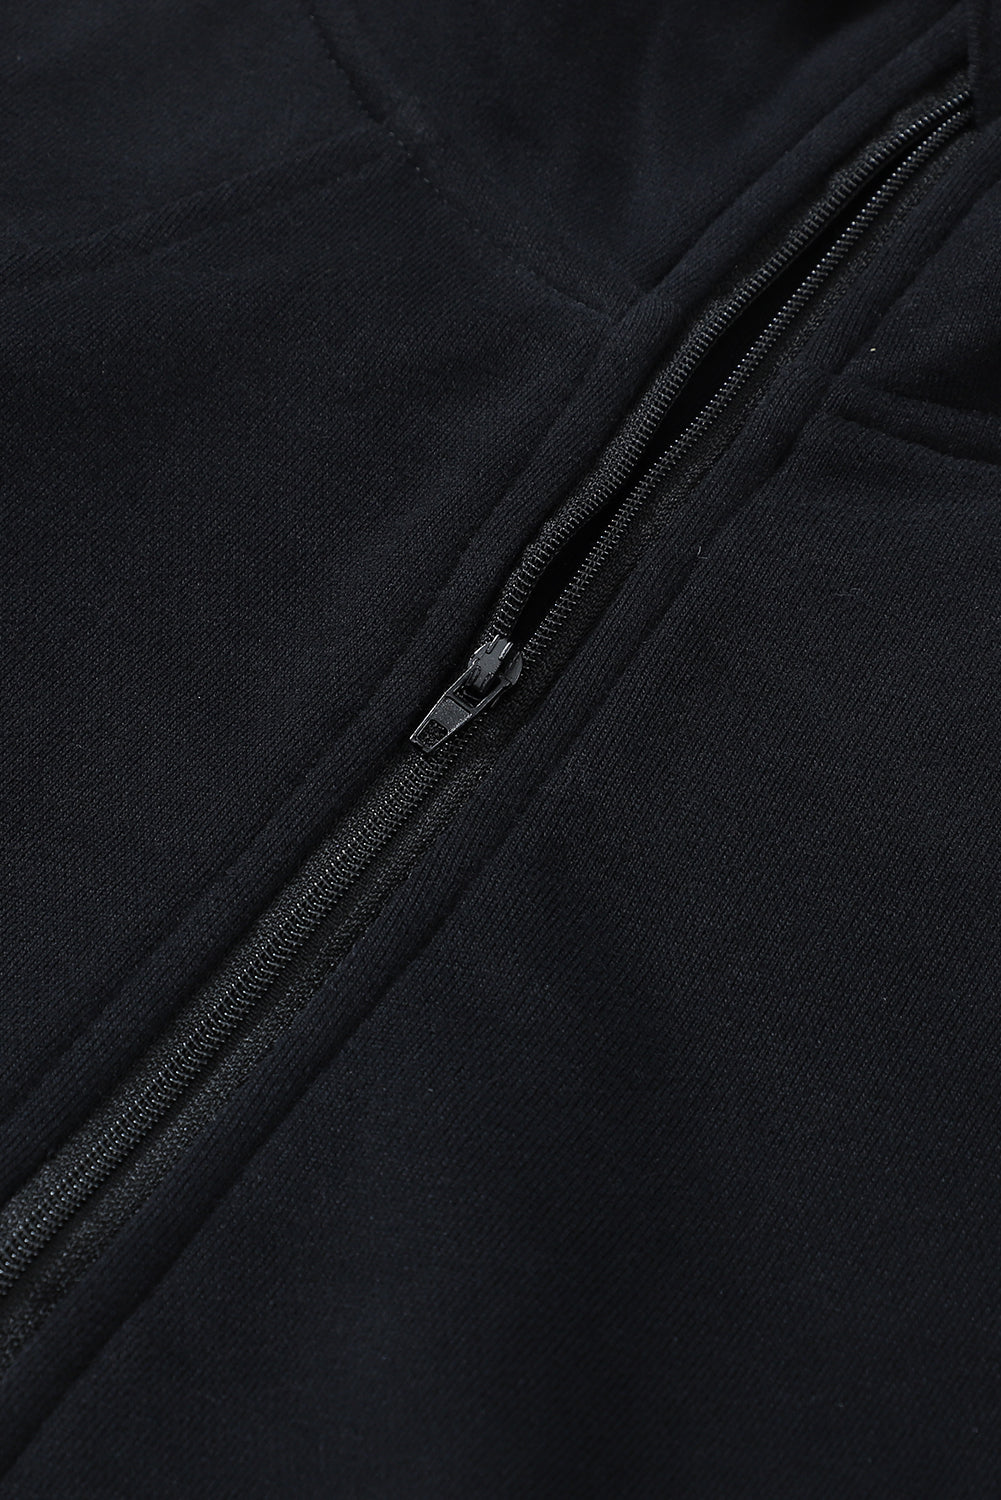 Črn pulover z zadrgo in stoječim ovratnikom z rebrastimi rokavi